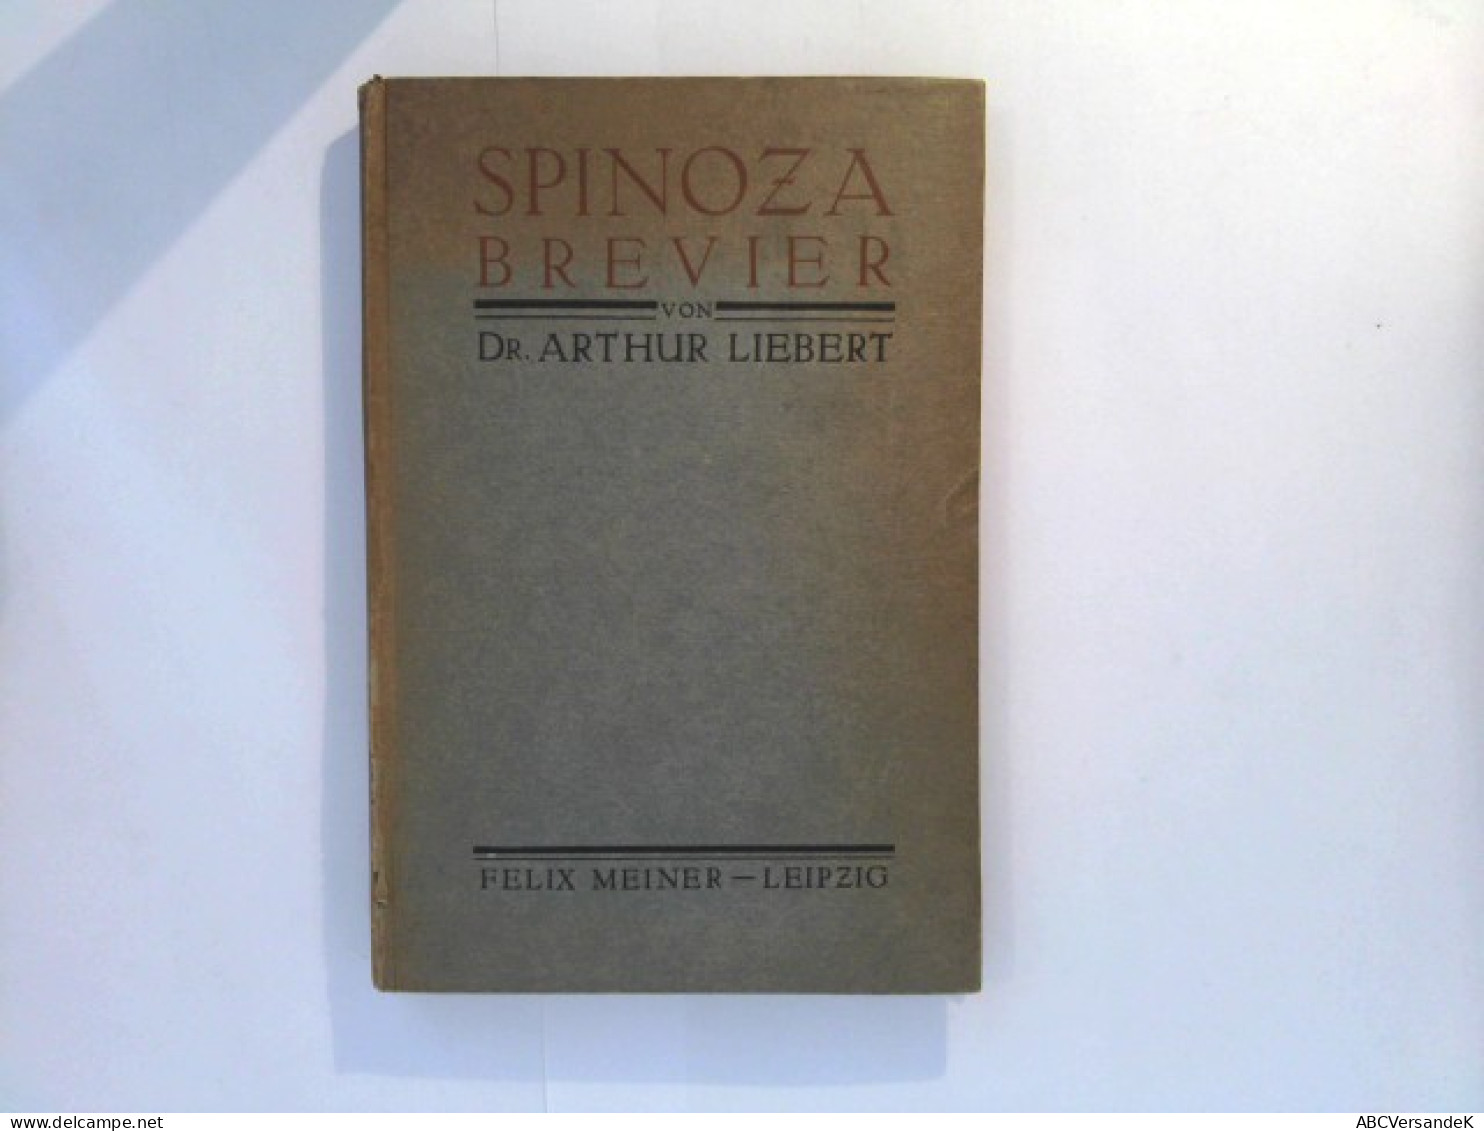 Spinoza - Brevier - Philosophy